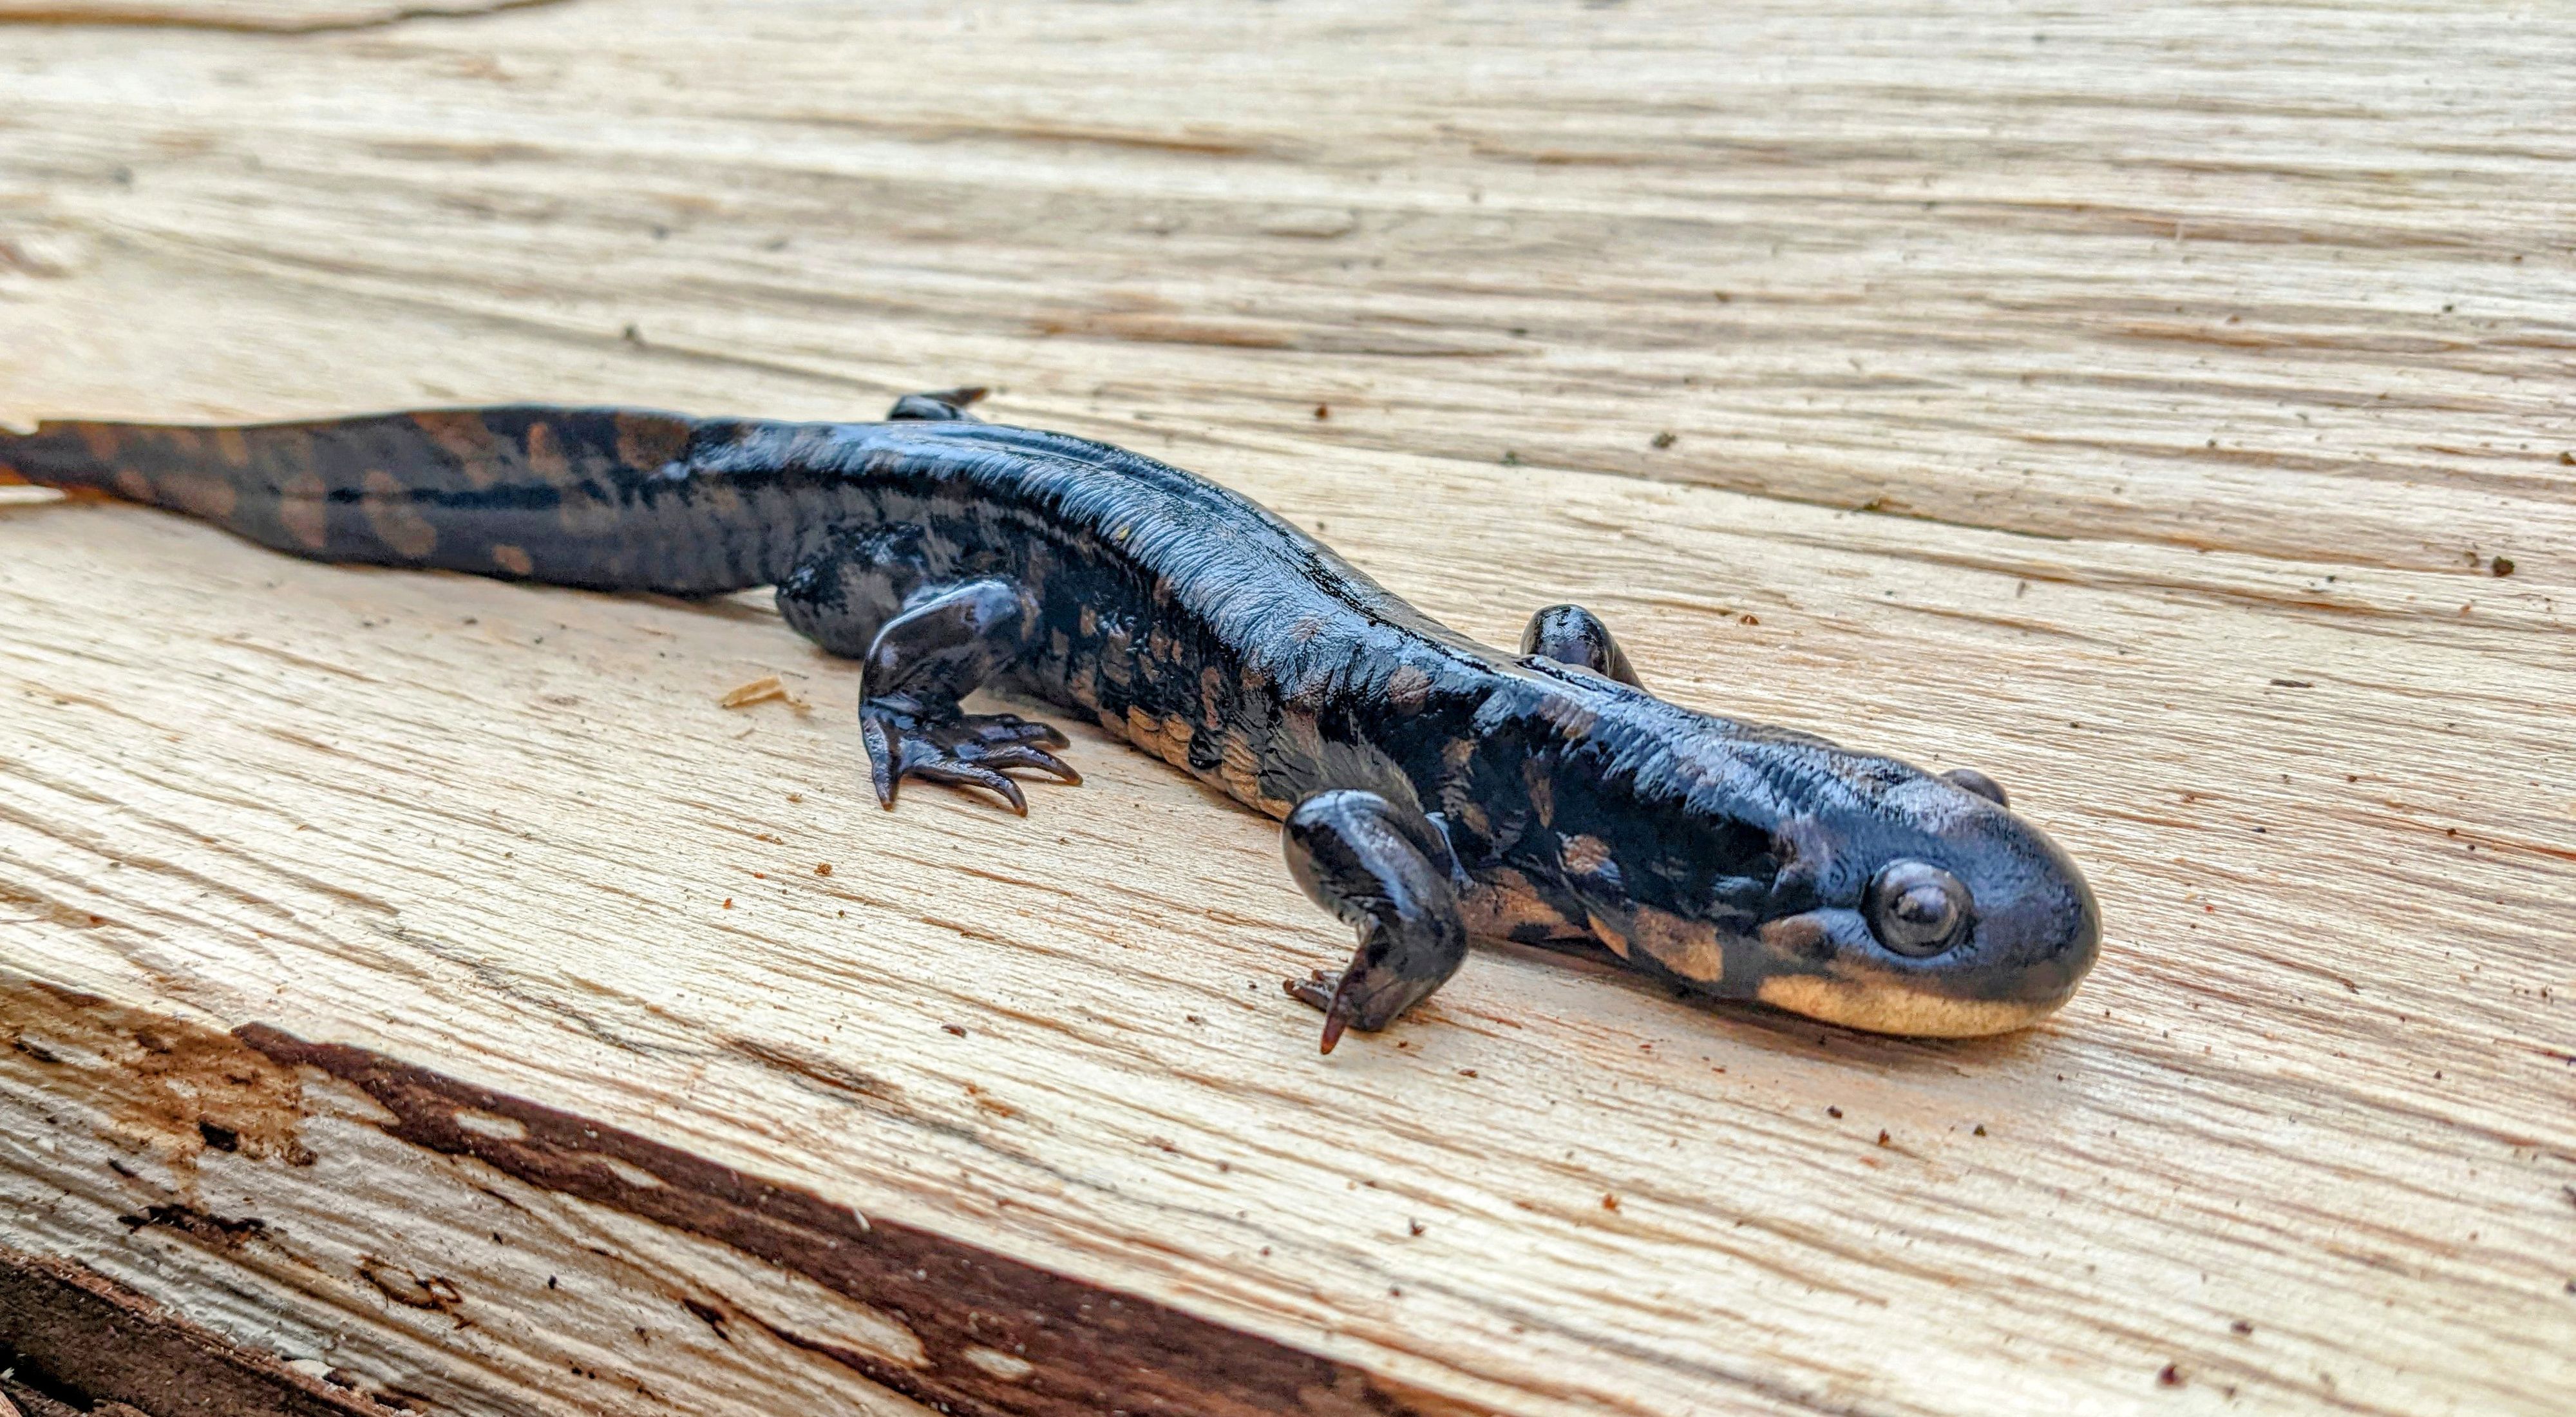 Tiger salamander resting on split log.